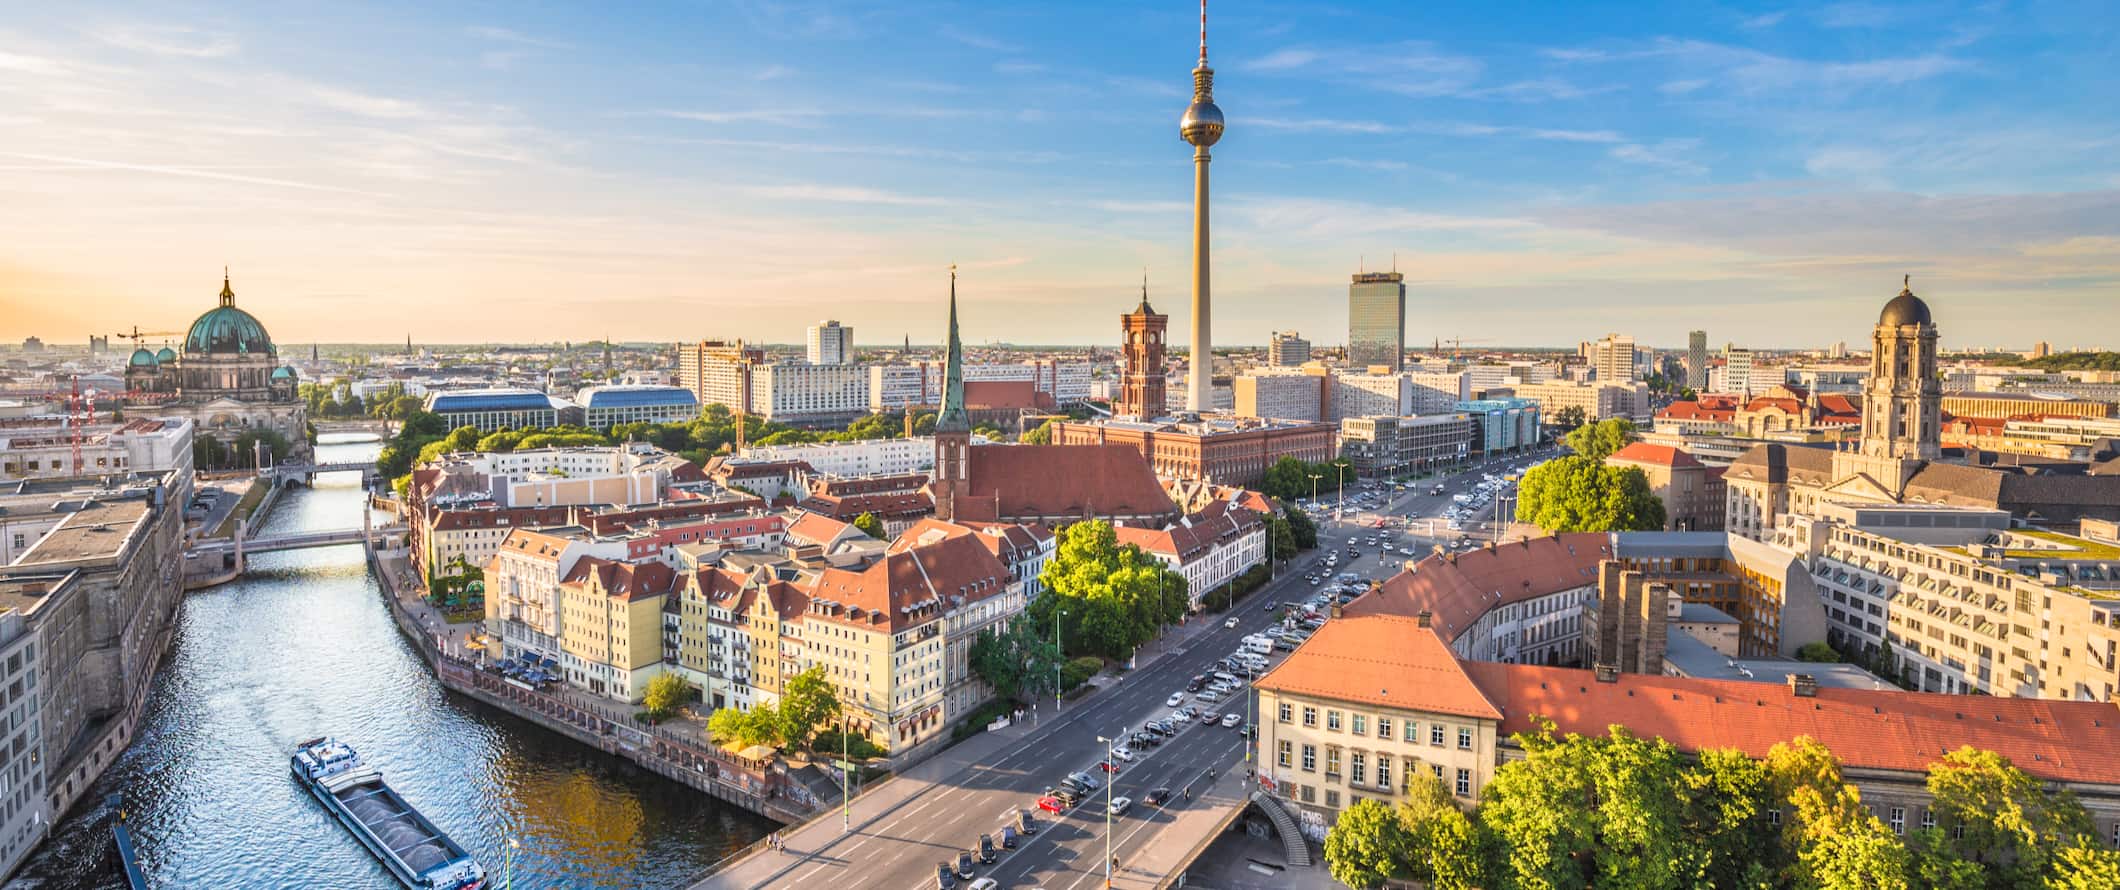 Vista de Berlim, Alemanha, ao pôr do sol, com a famosa torre de TV ao longe